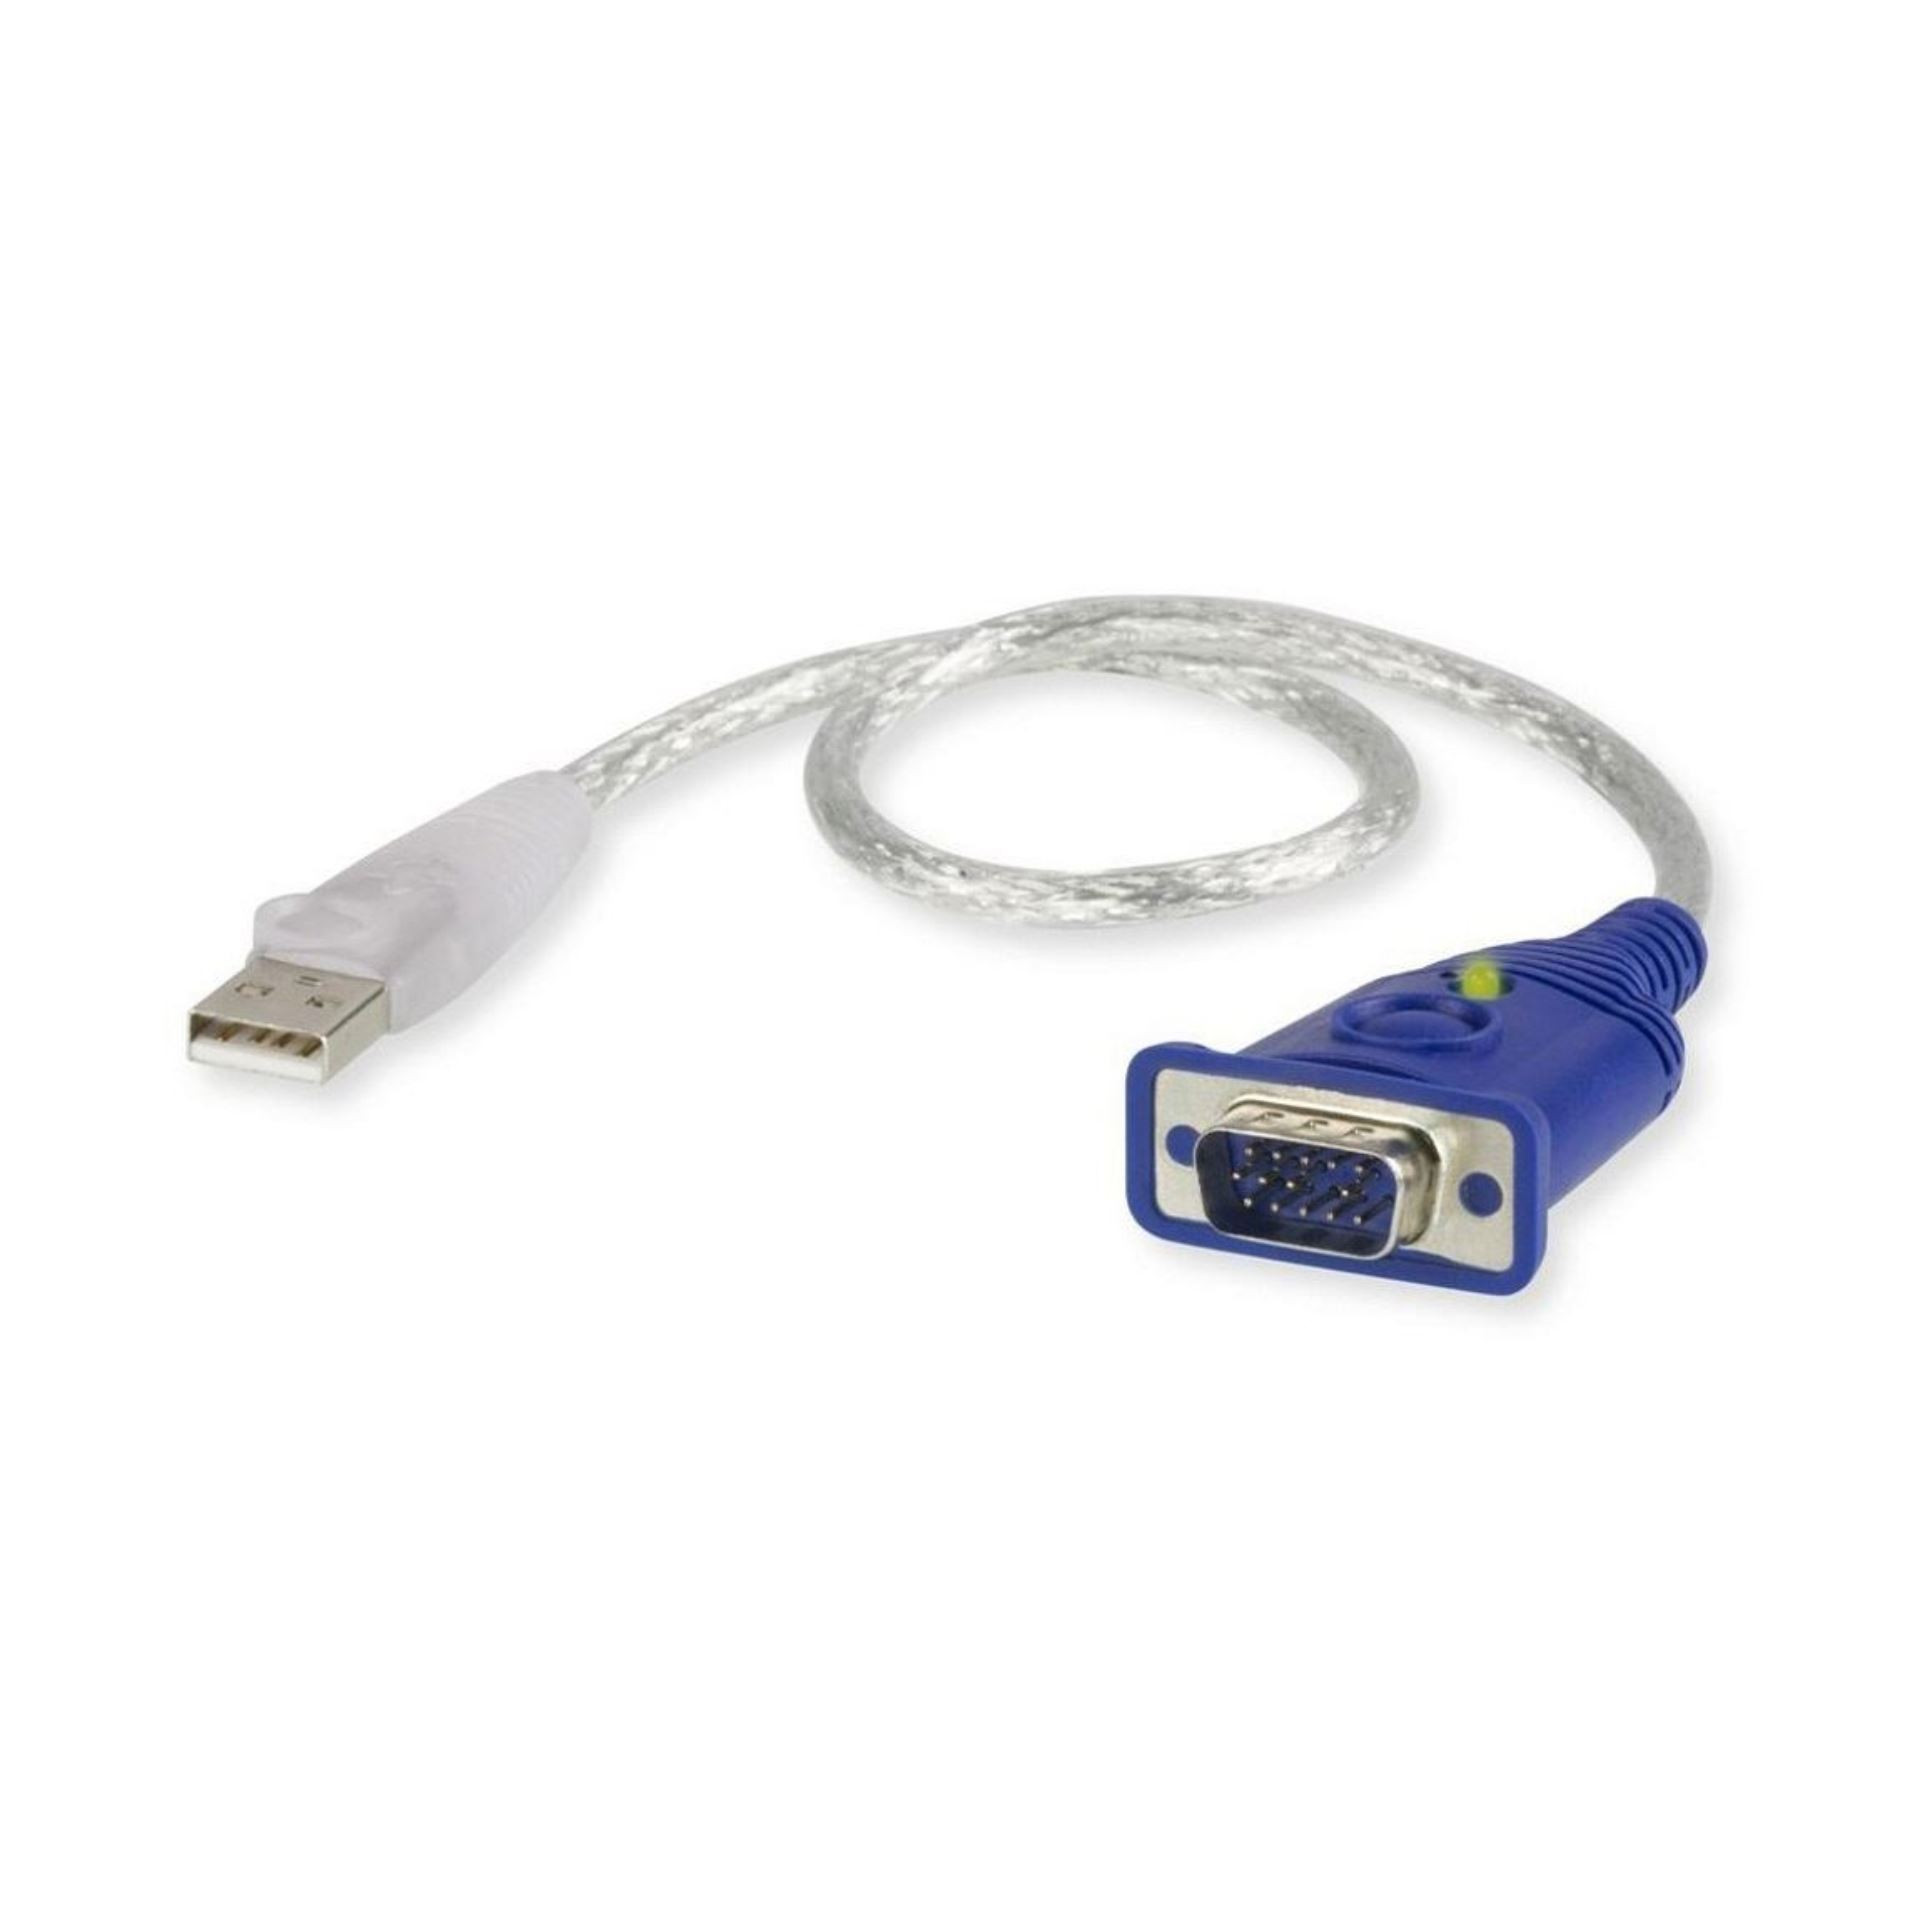 Pretvornik USB - VGA EDID emulator DB15 Aten